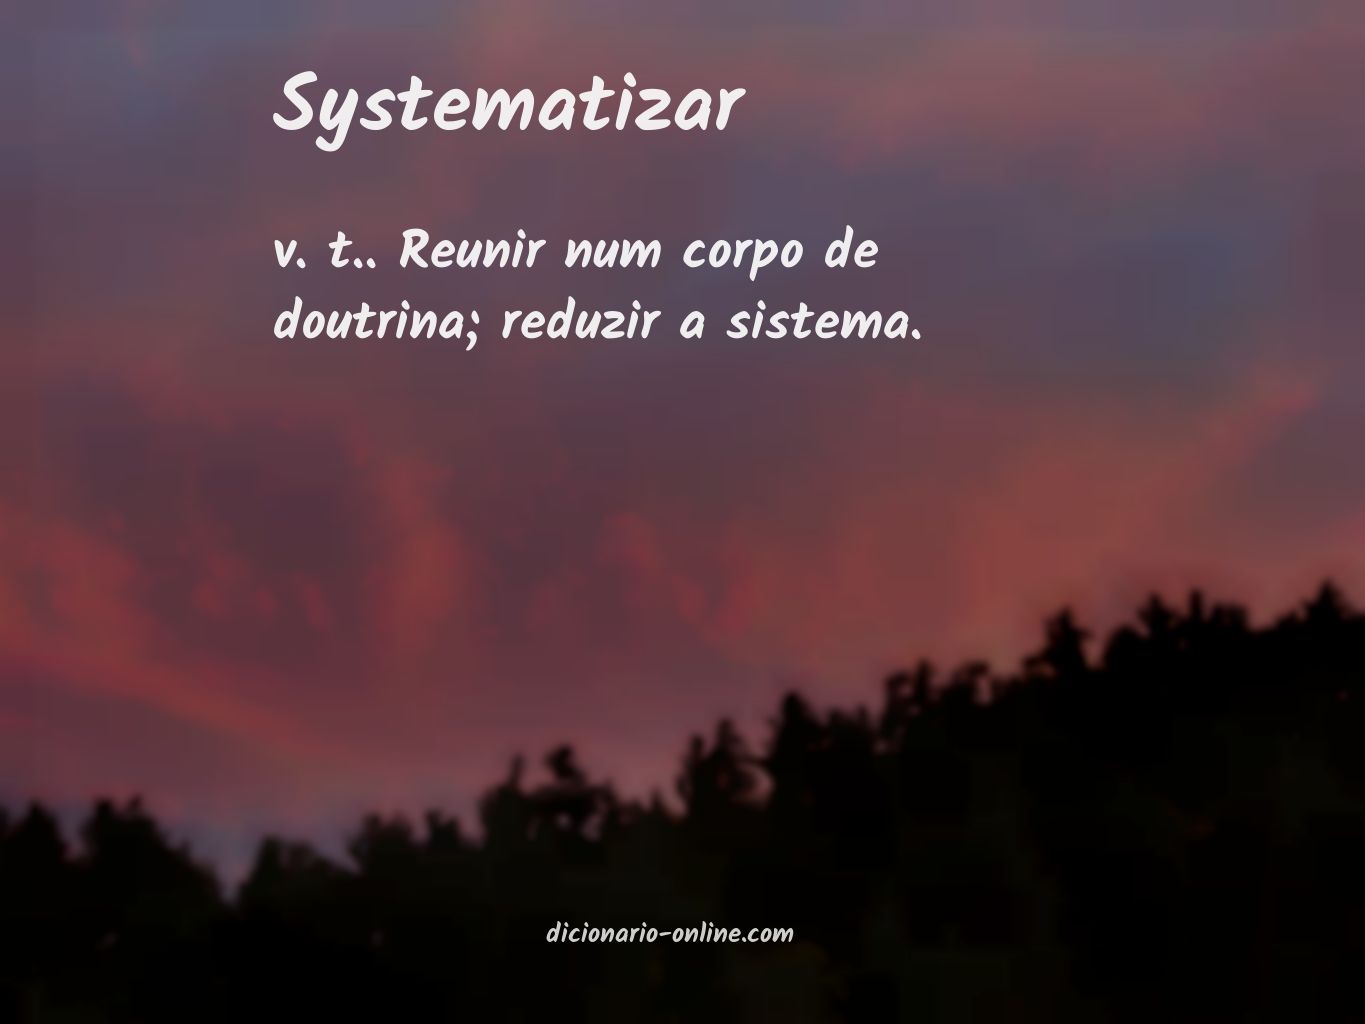 Significado de systematizar